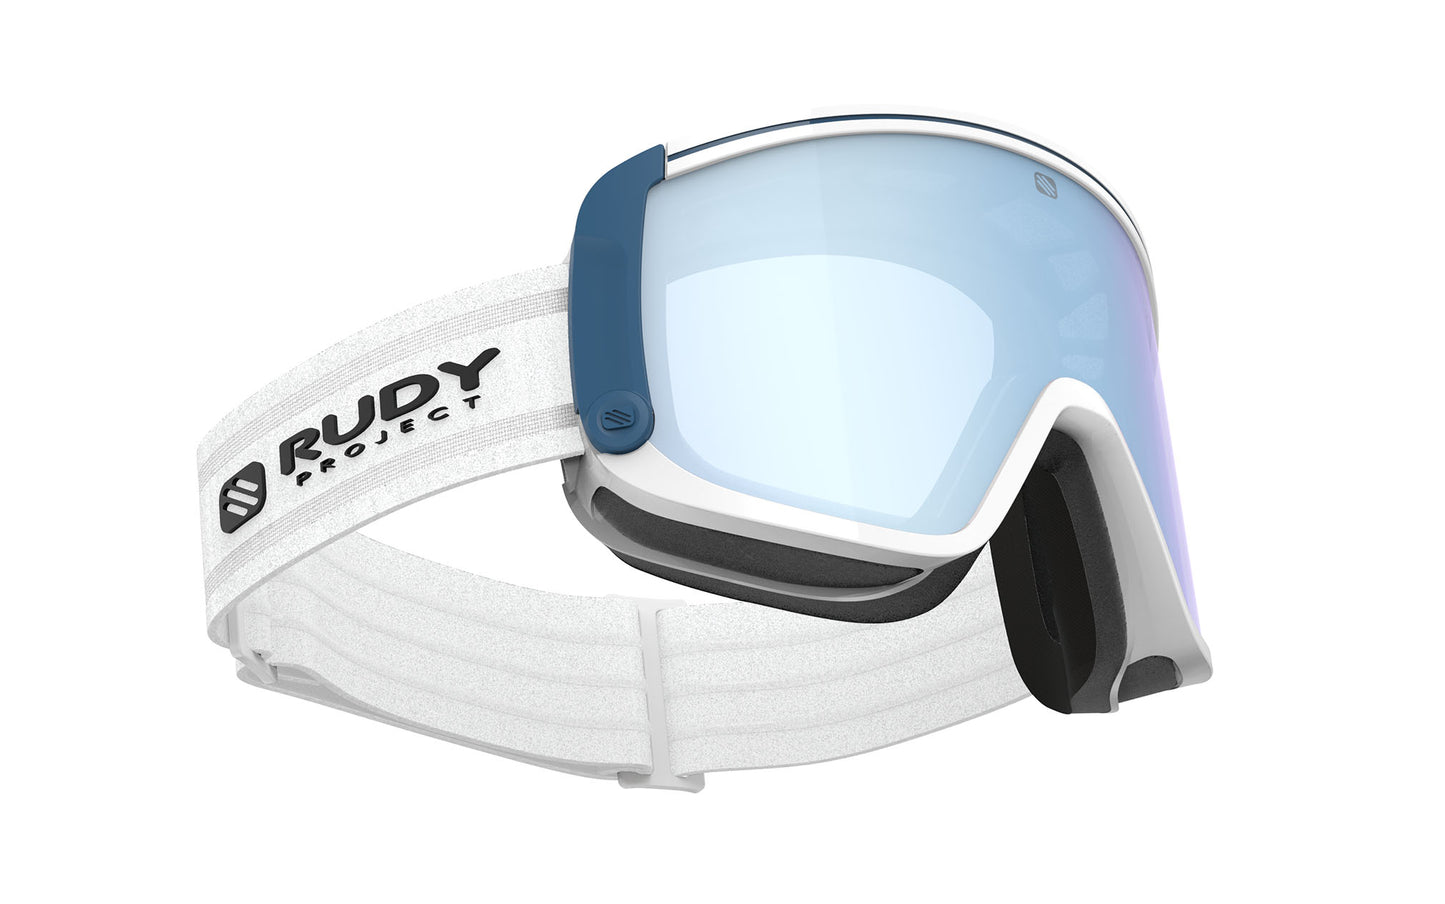 
                  
                    Spincut Ski Goggle RX Clip Insert & Prescription Lens
                  
                